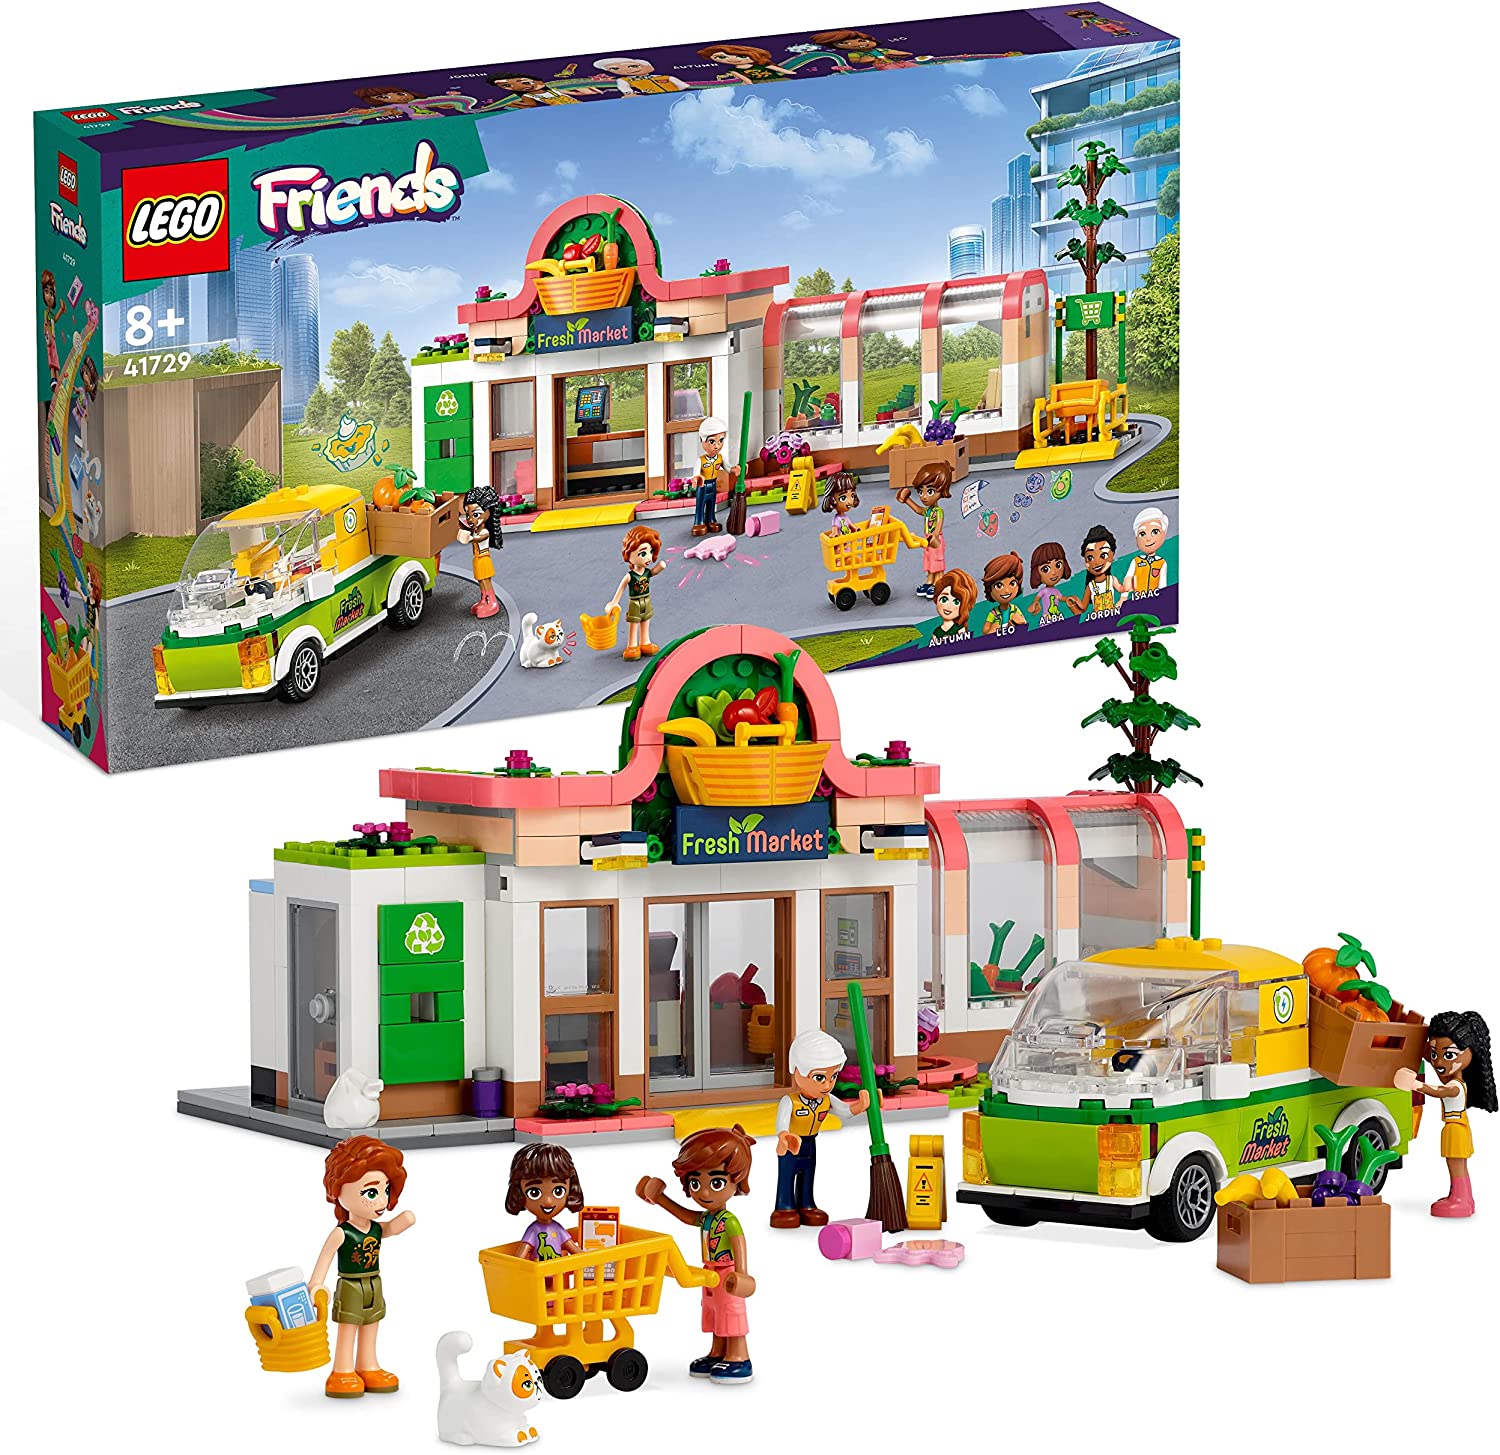 Bild zu Lego Friends Bio-Laden (41729) für 47,02€ (Vergleich: 56,94€)